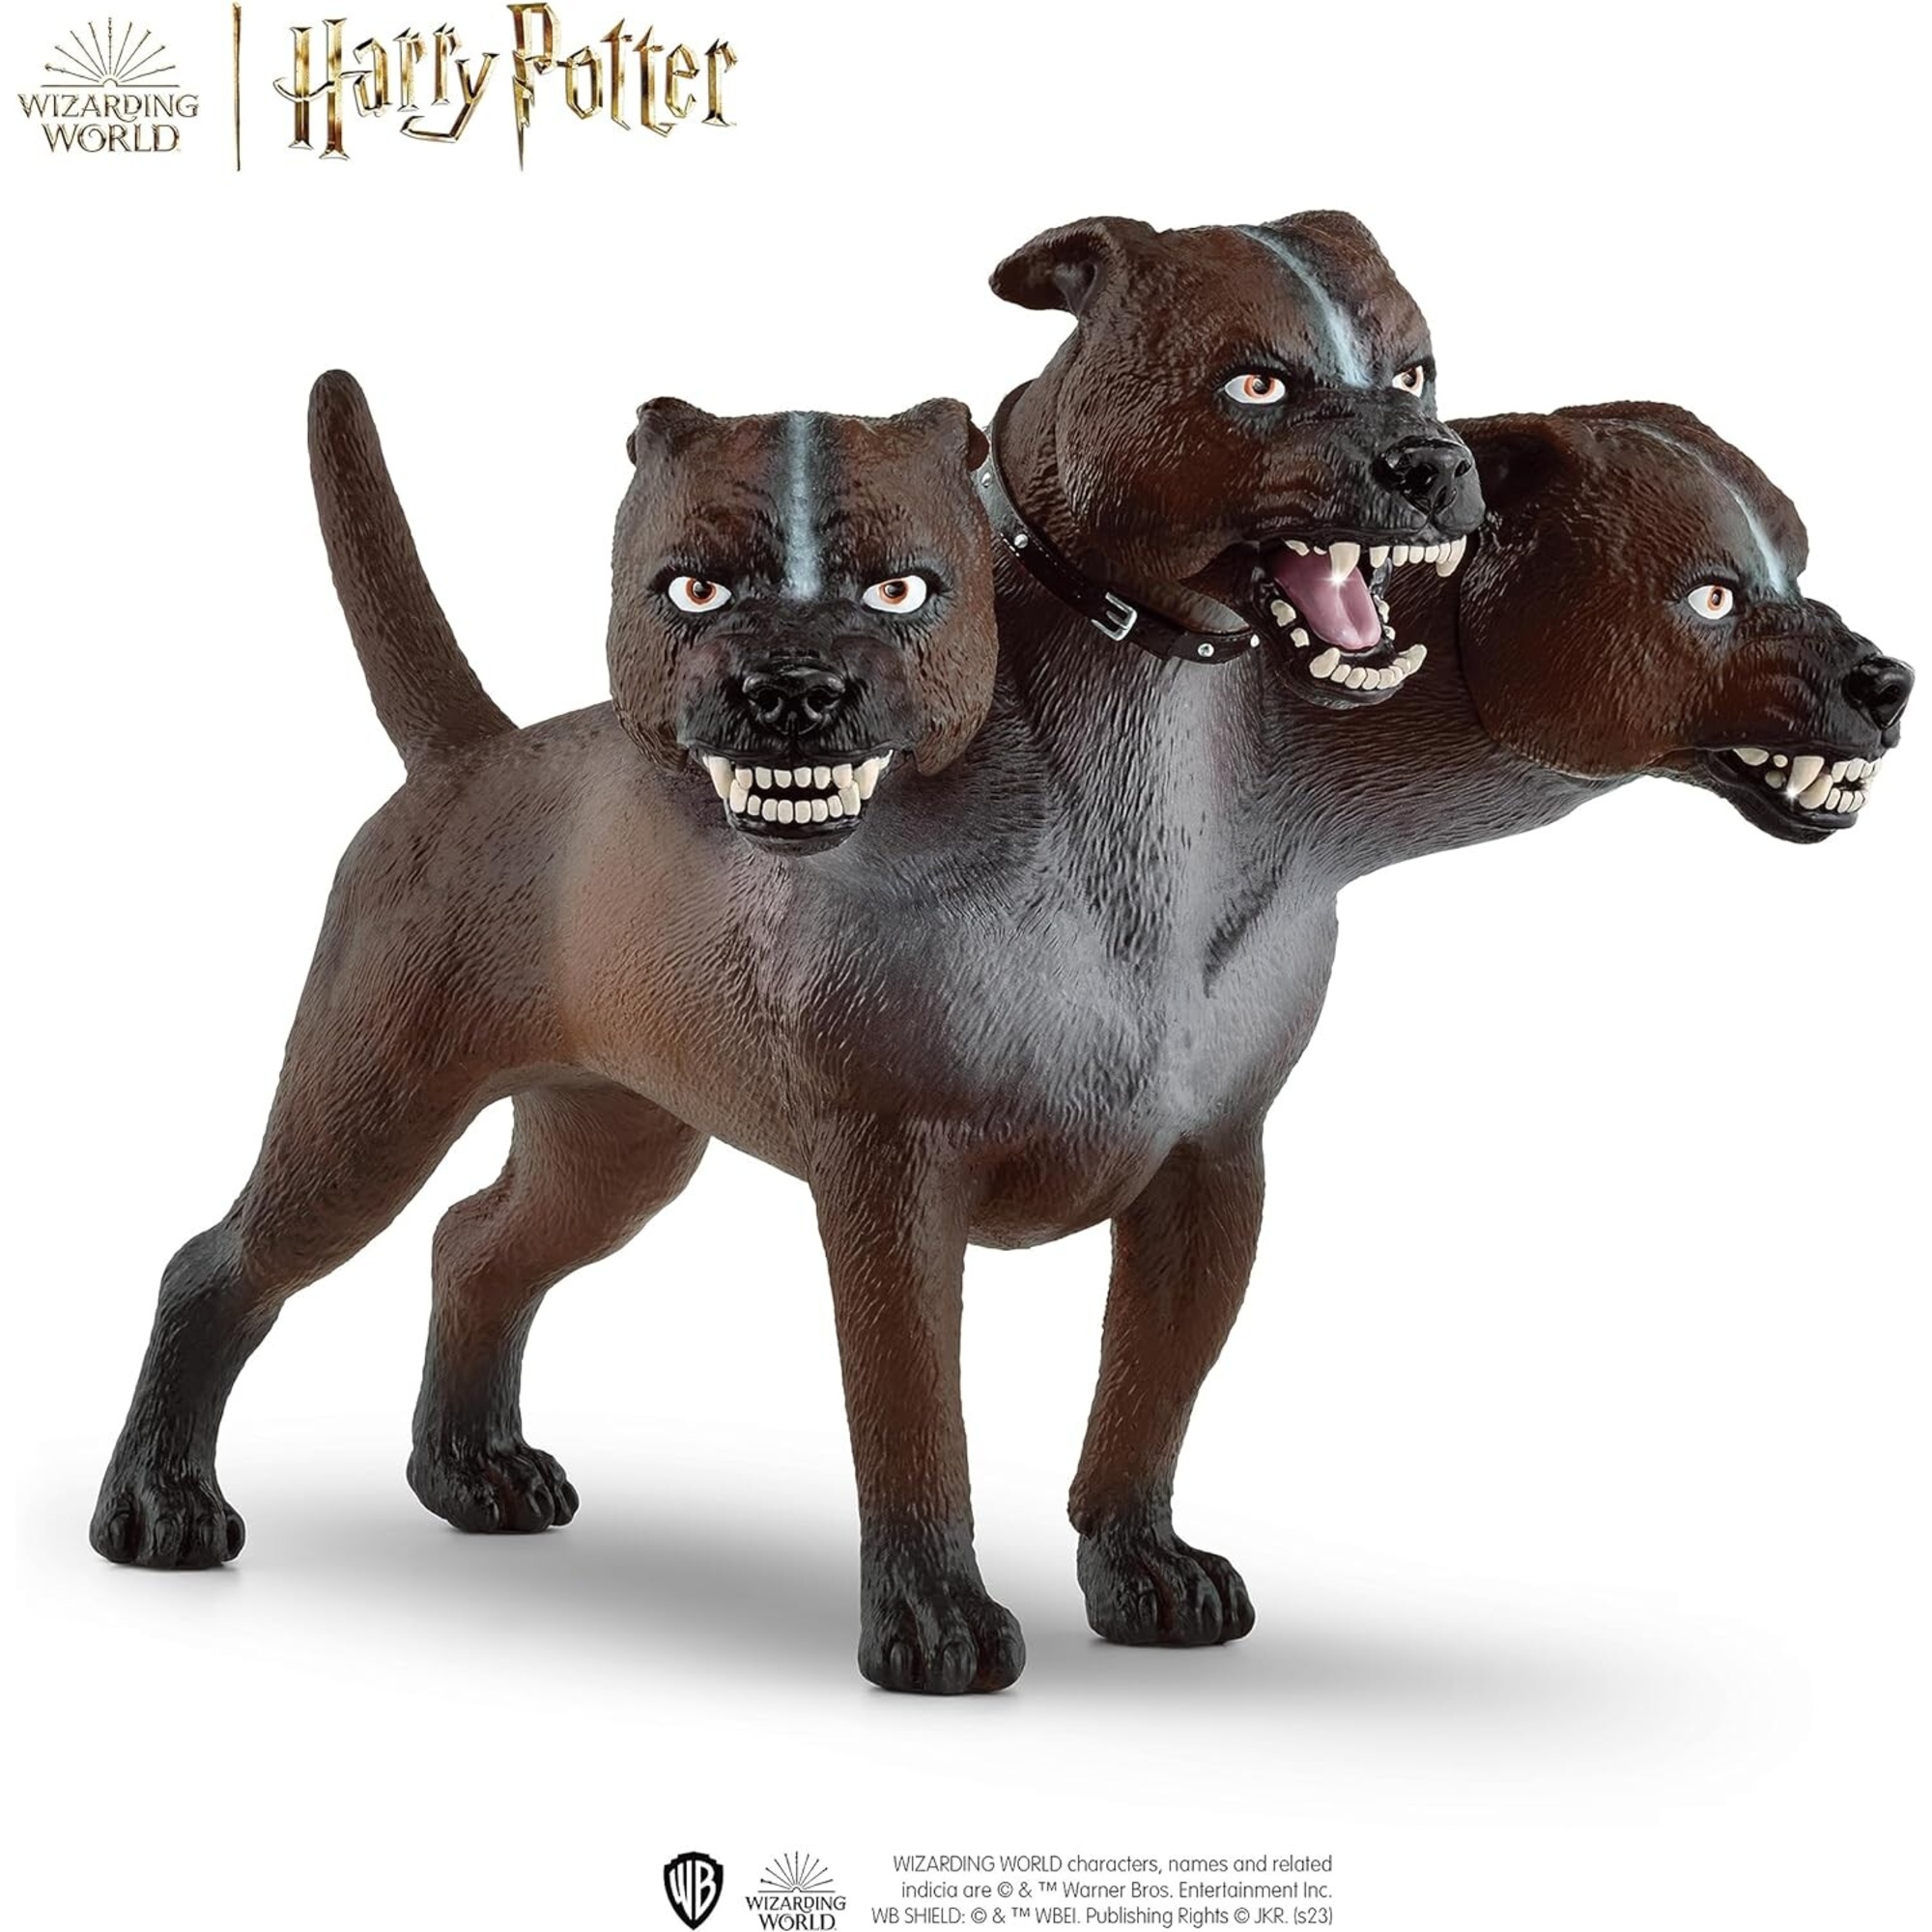 Schleich- soffice wizarding world fluffy uomo, multicolore, 13990 - Harry Potter, Schleich